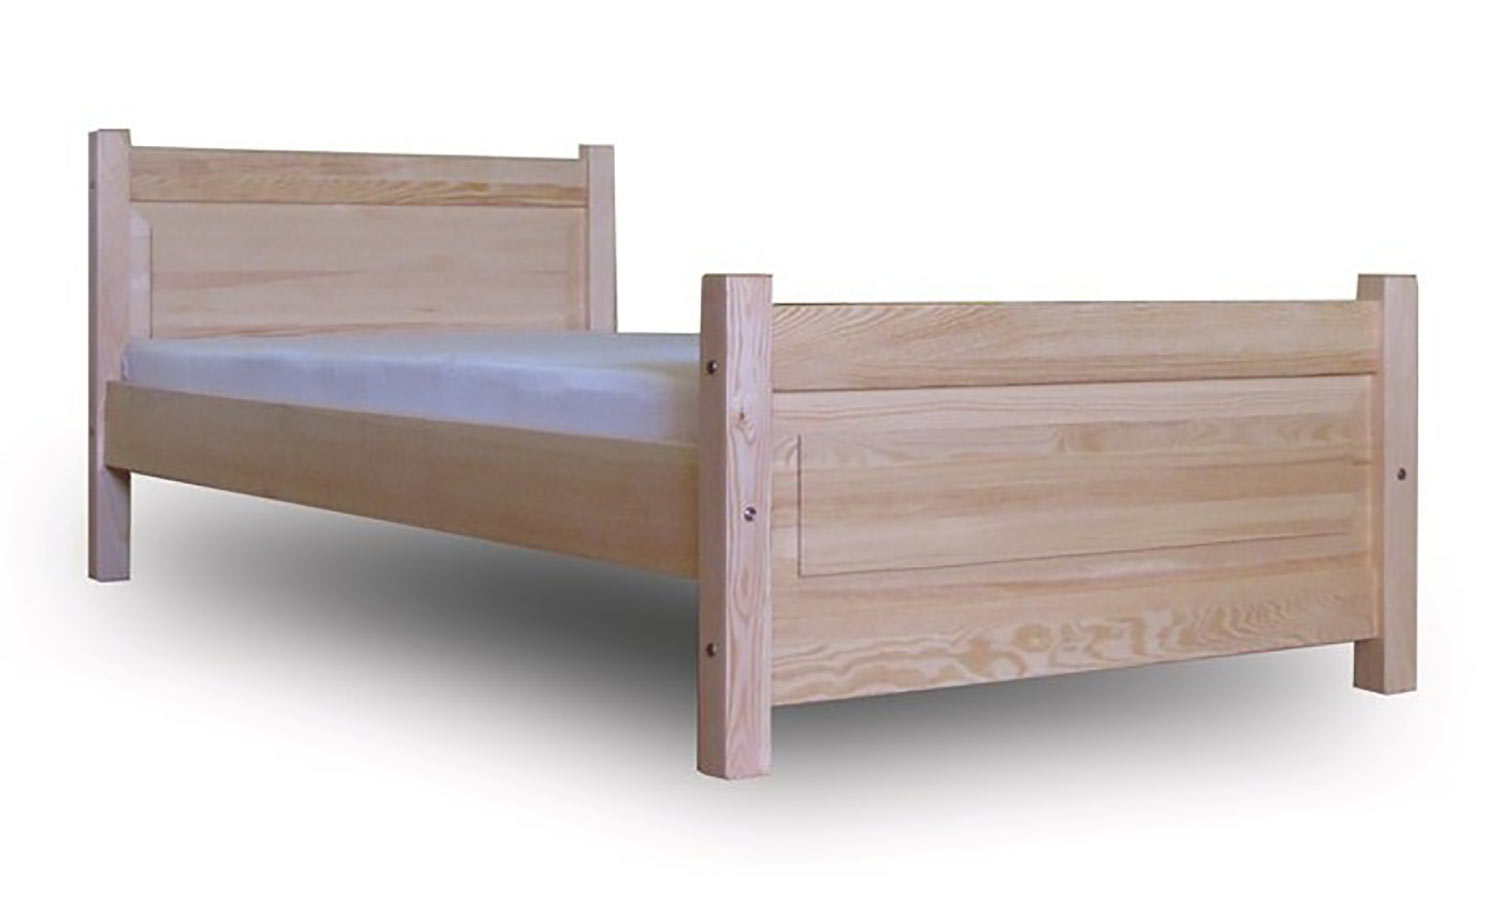 Drevená jednolôžková posteľ Luss v rozmeroch 90x200 cm má mnoho farebných možností. (Výrobca: NÁBYTOK MIREK)